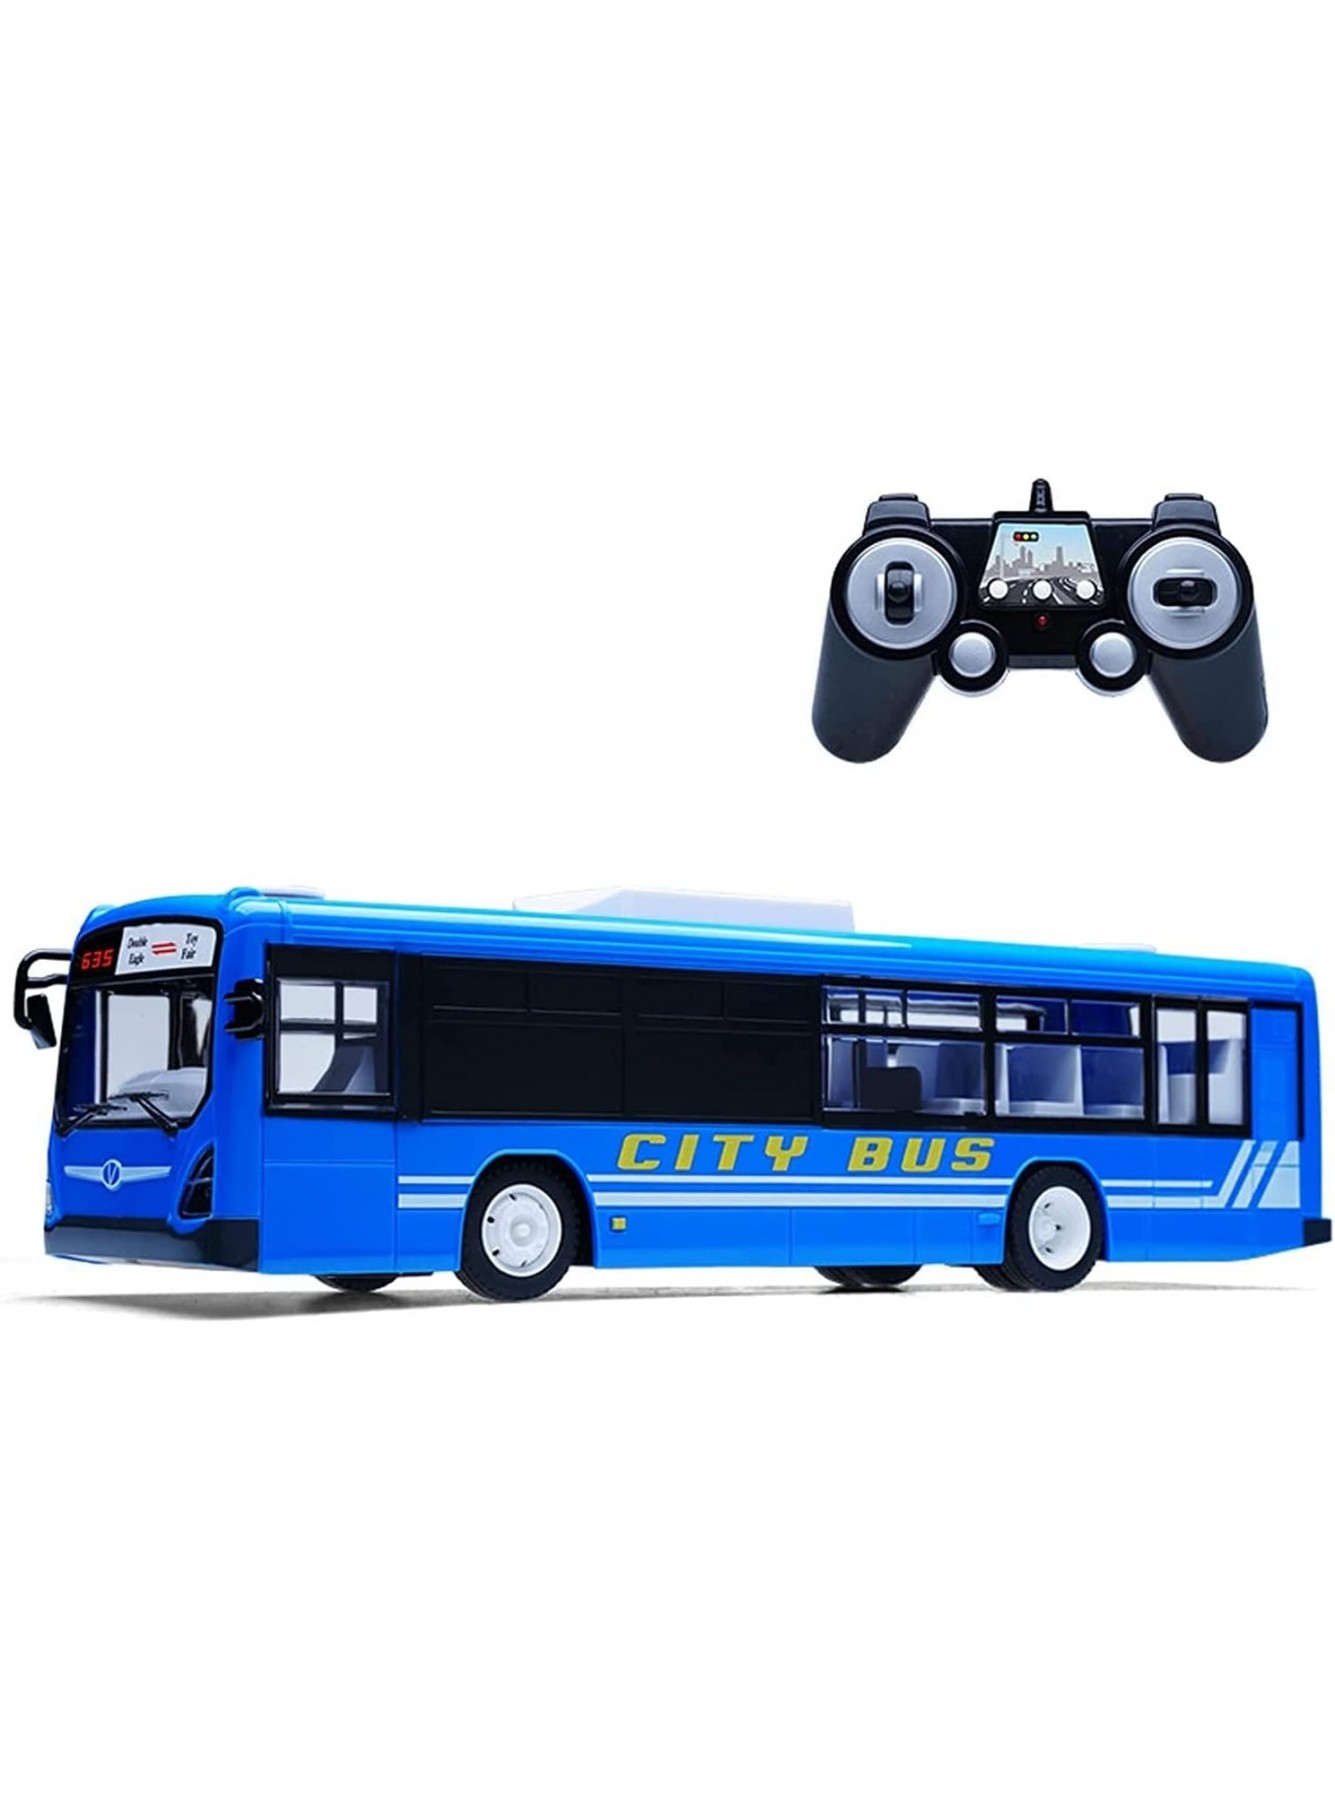 UimimiU 2.4 GHz groß Rc Bus Kinderspielzeug Wireless Rc Der Schulbus kann die Tür öffnen und aufladen Rc LKW-Spielzeugsimulation. Rc Autos for Erwachsene und Jungen Pädagogisches Spielzeug beste Weihn - B09KTZ4DJV